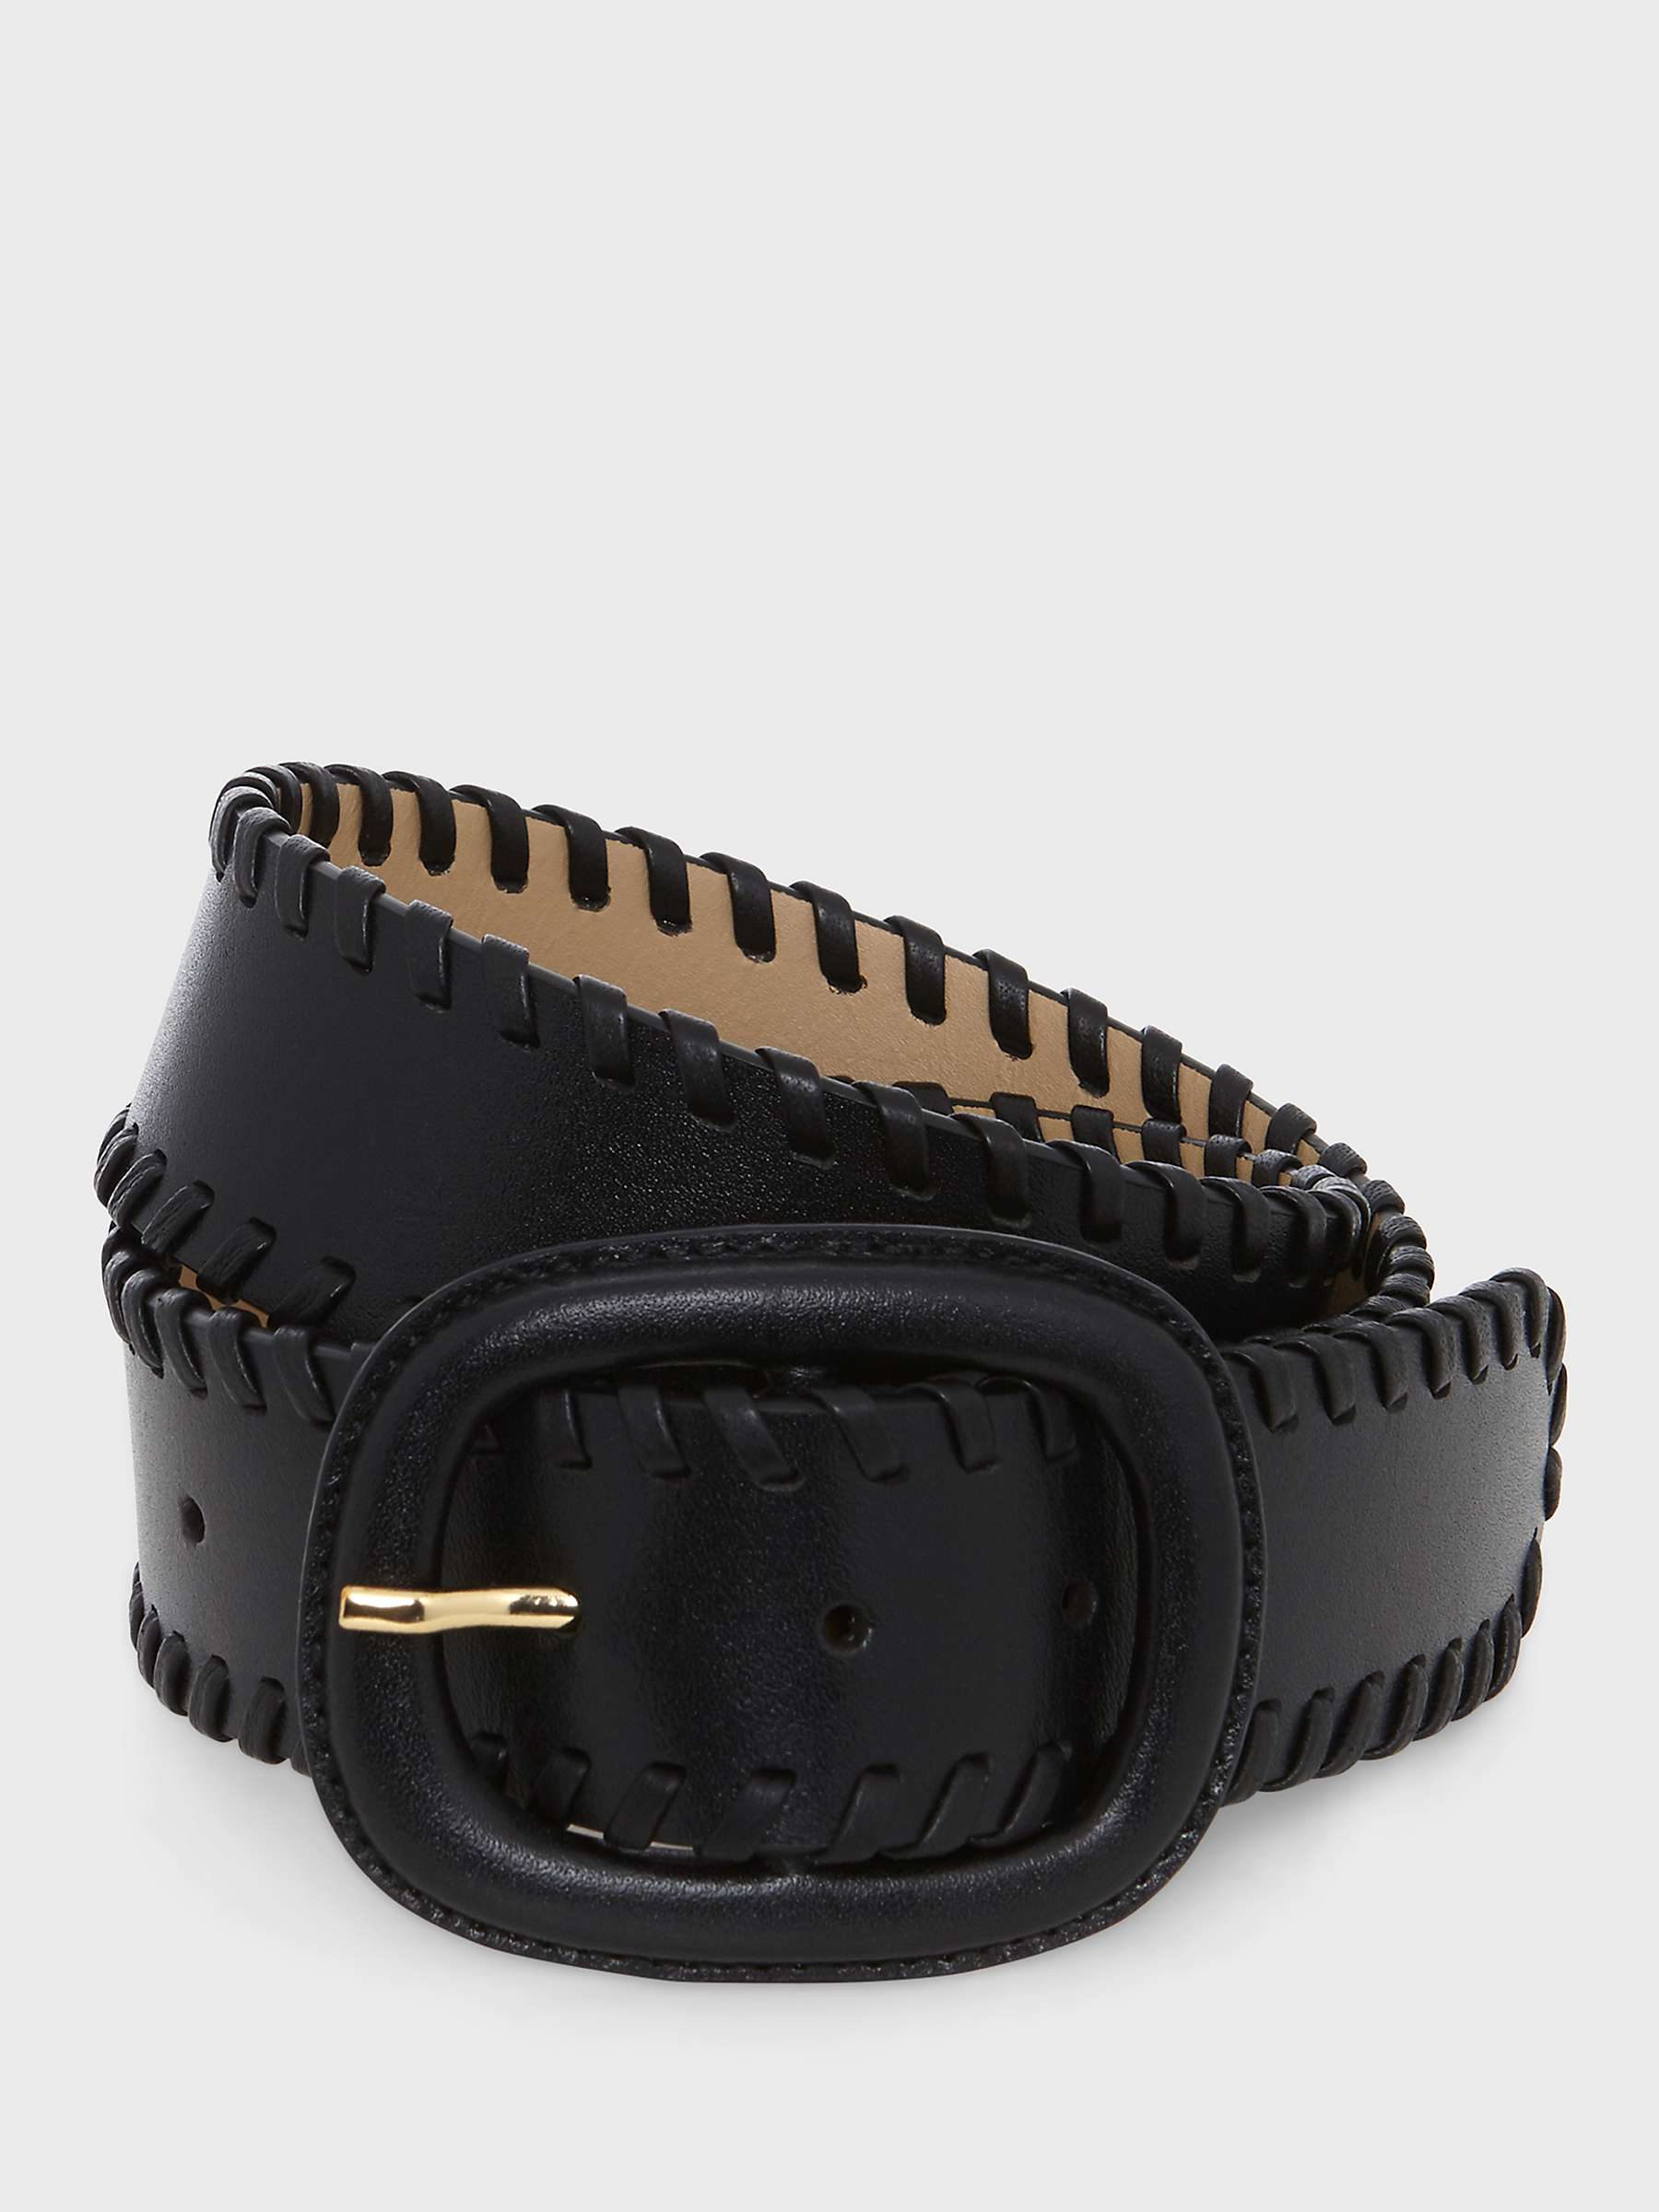 Buy Hobbs Savannah Leather Belt, Black Online at johnlewis.com